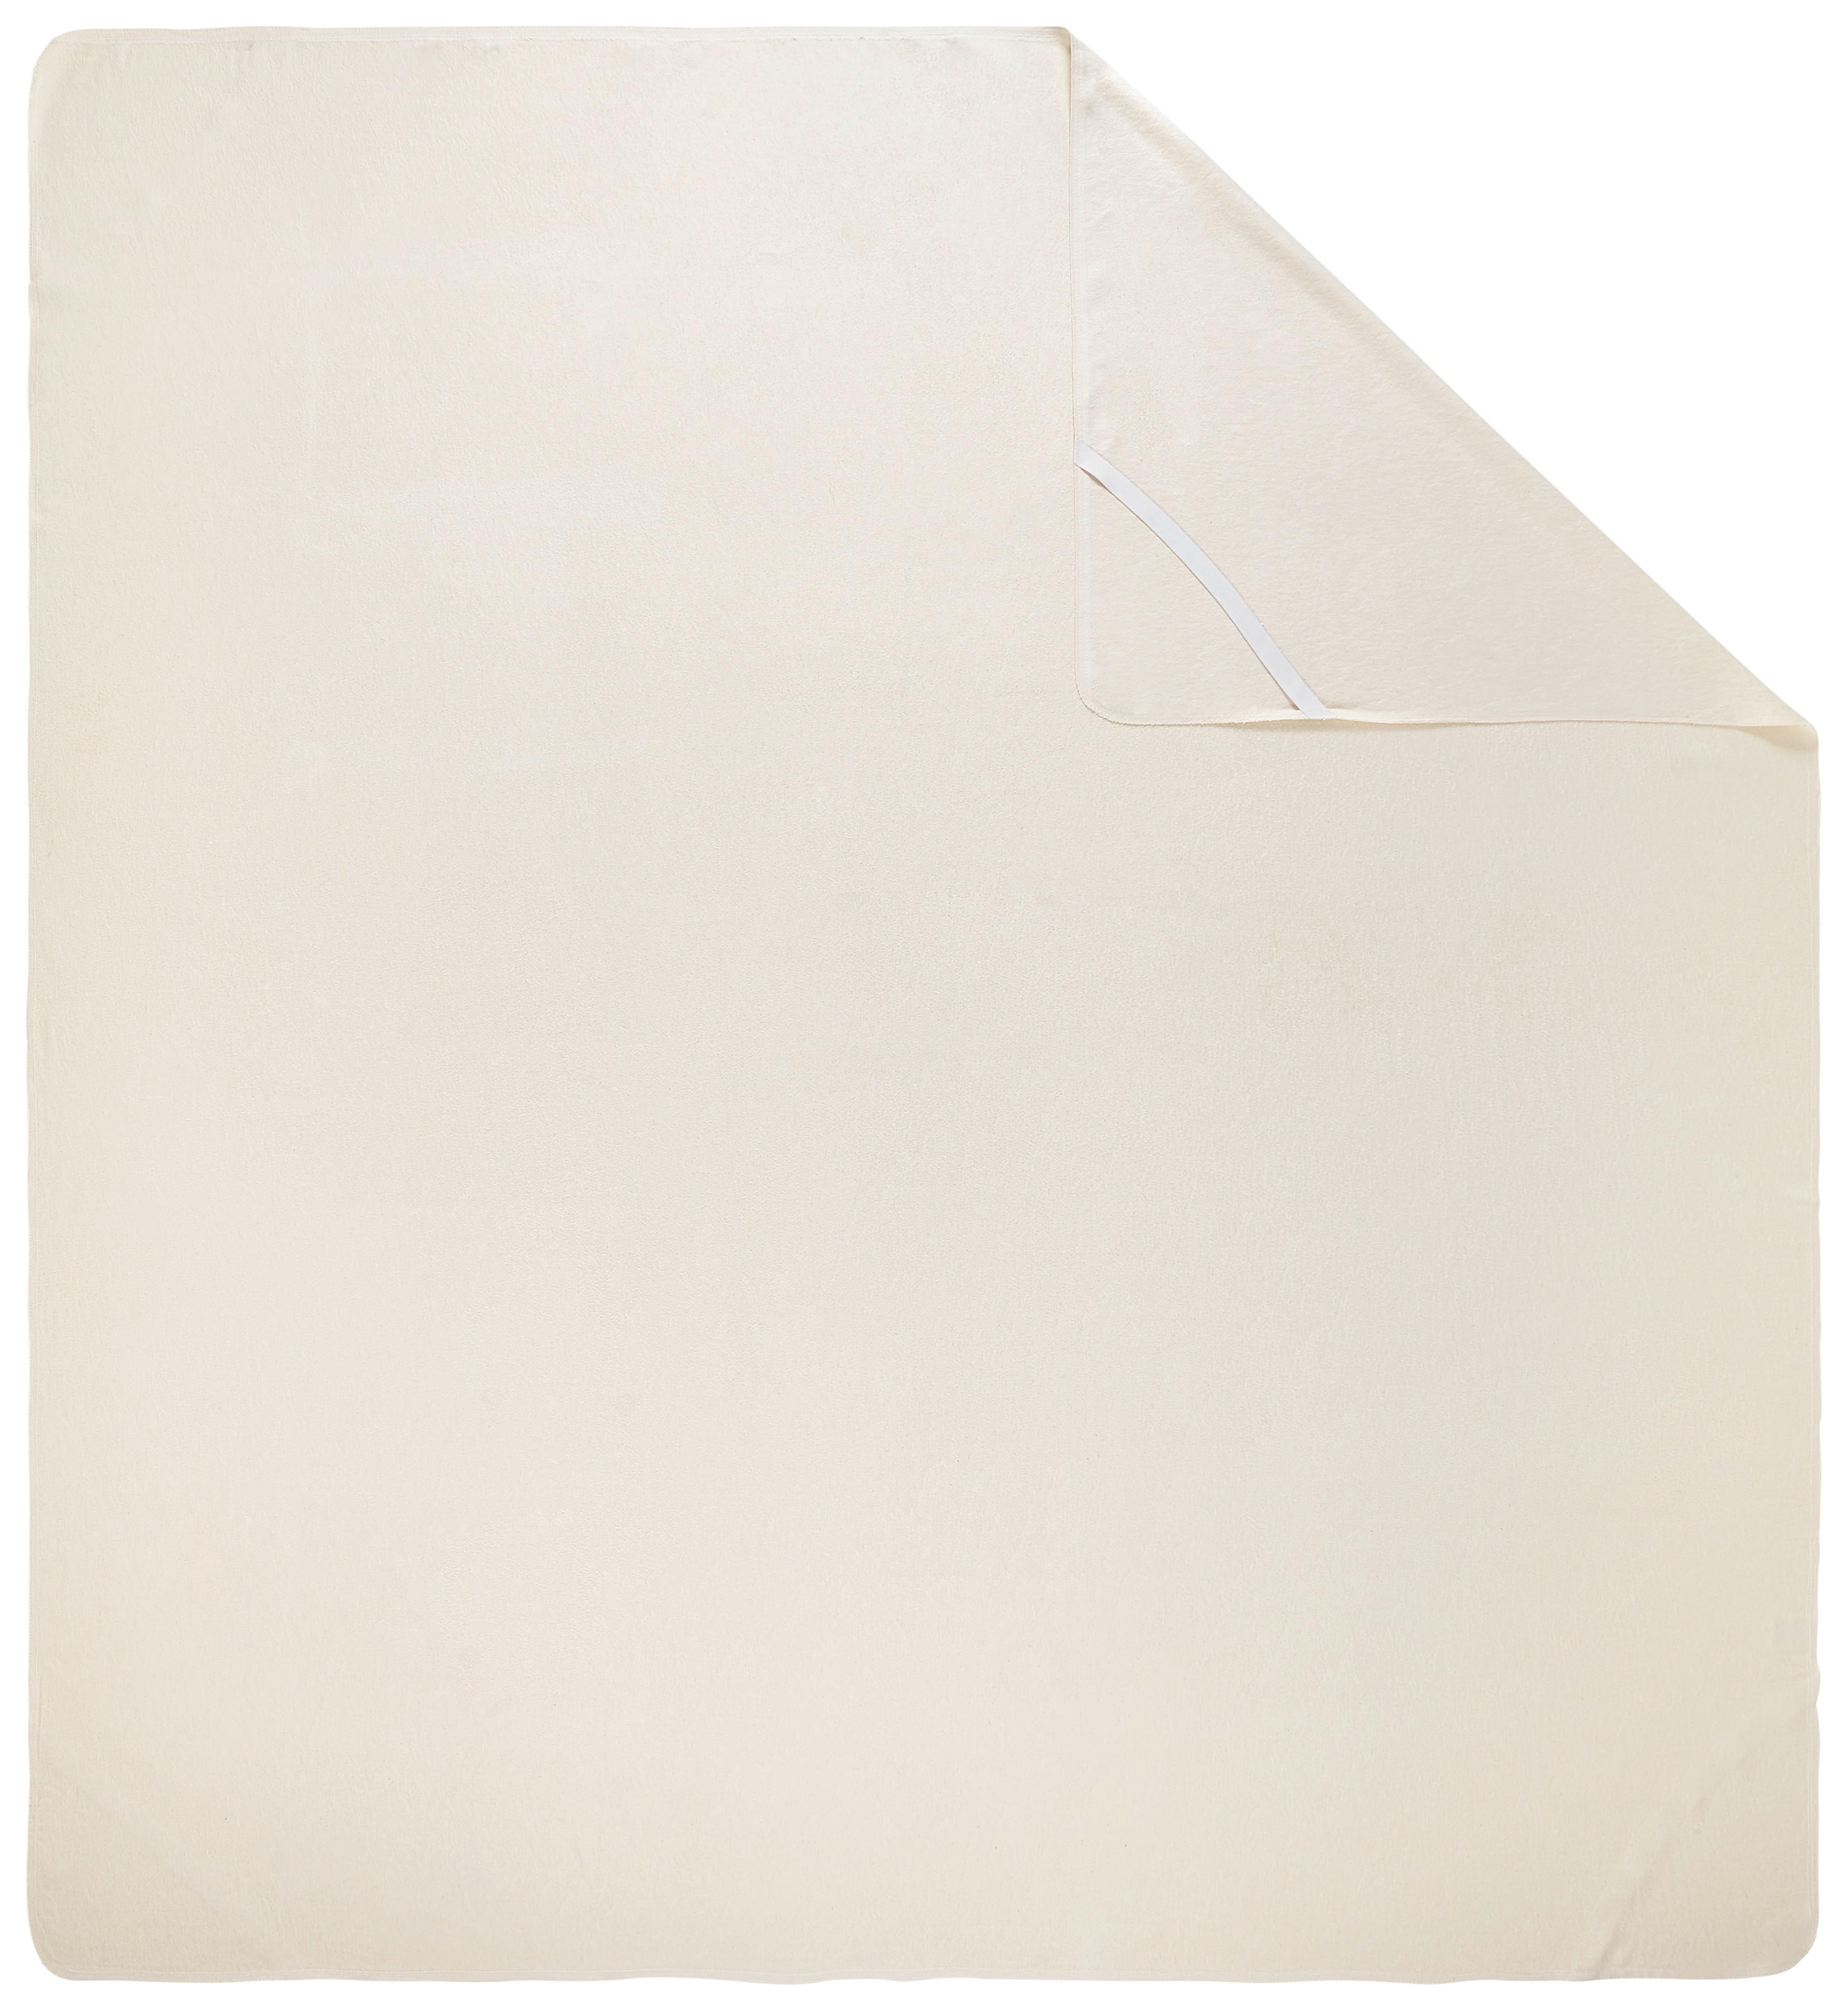 Chránič Matrace Manuel, 180/200cm, Bílá - béžová, textil (180/200cm) - Modern Living